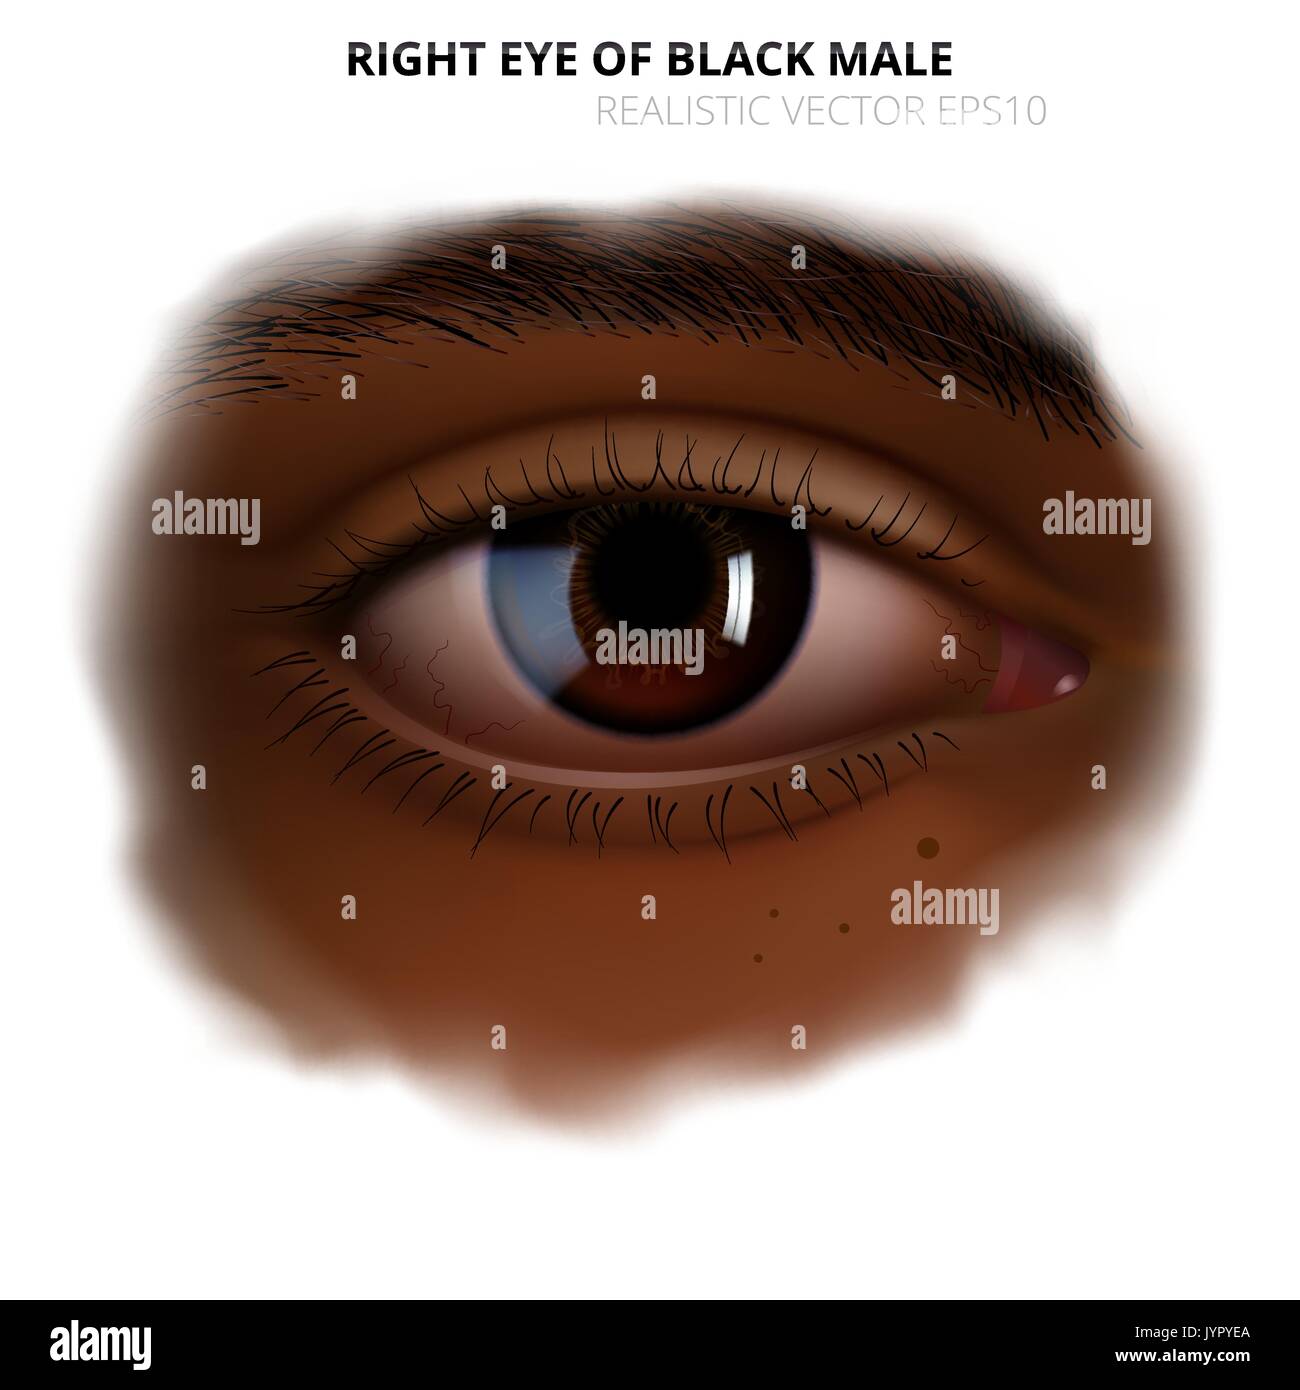 Réaliste de l'œil humain. Plus d'oeil droit d'adulte homme ou femme noir brillant avec un iris brun. La peau foncée de face avec un bord transparent brouillée. Illustration de Vecteur